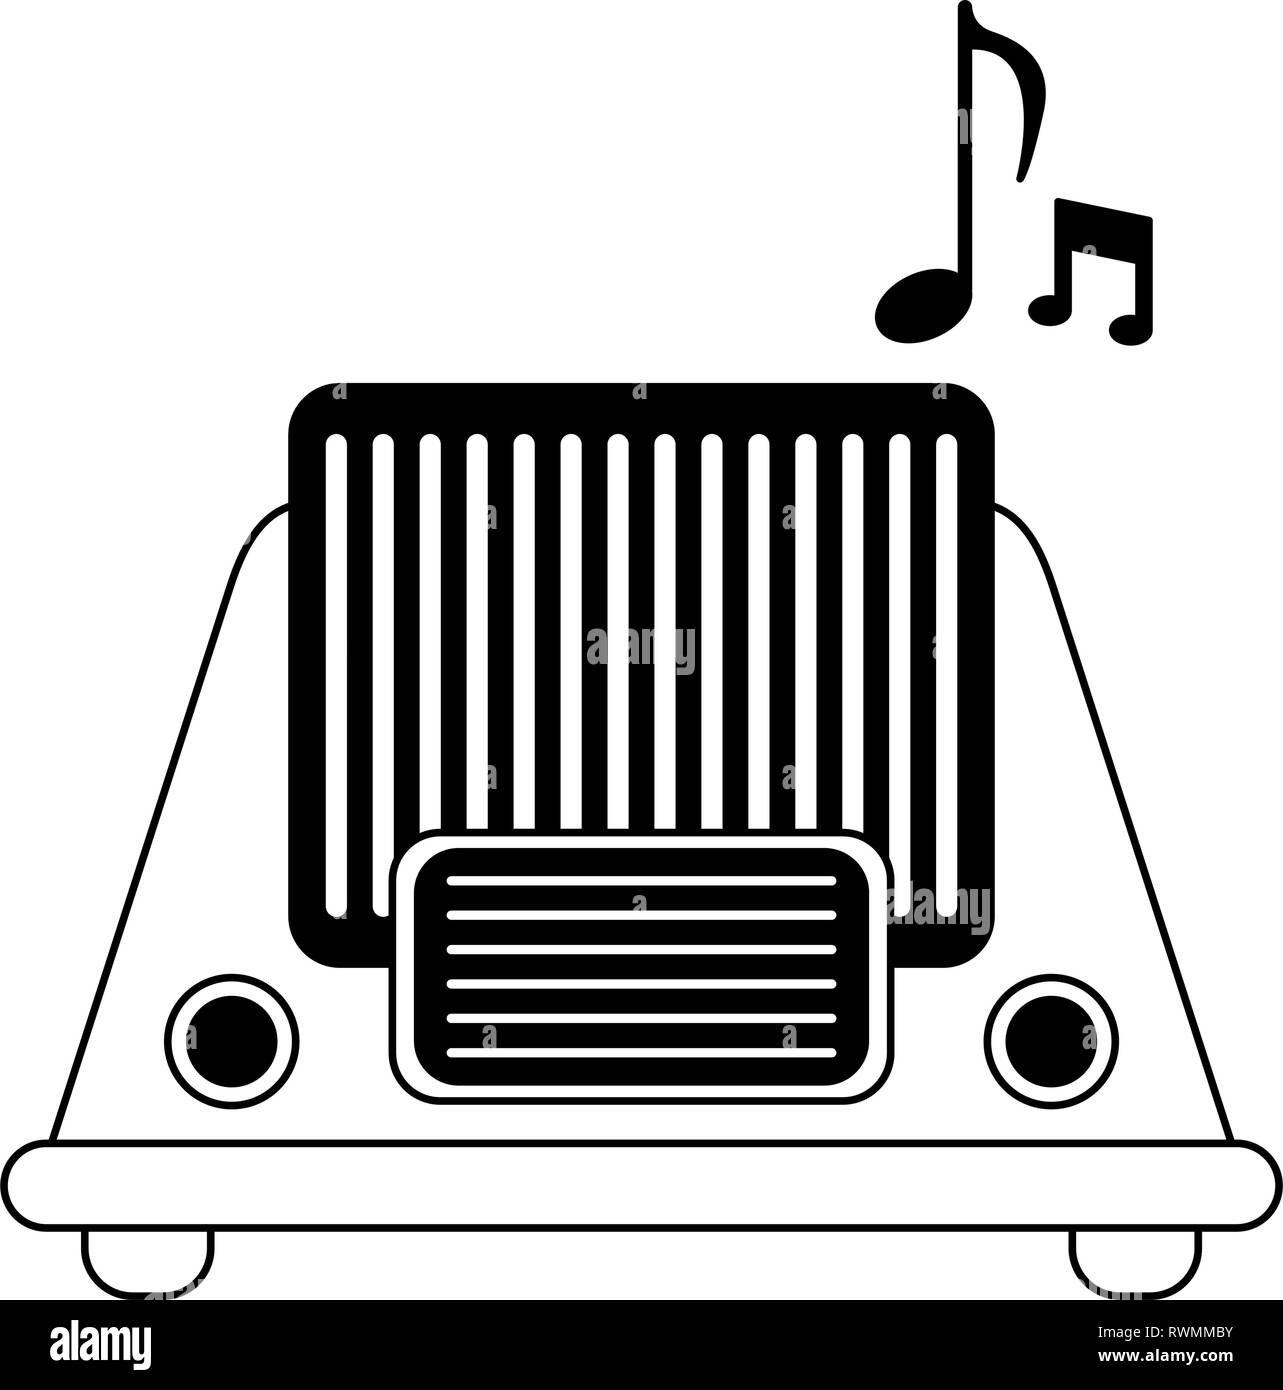 Alte Vintage Radio, Stereo, Schwarz und Weiß Stock Vektor